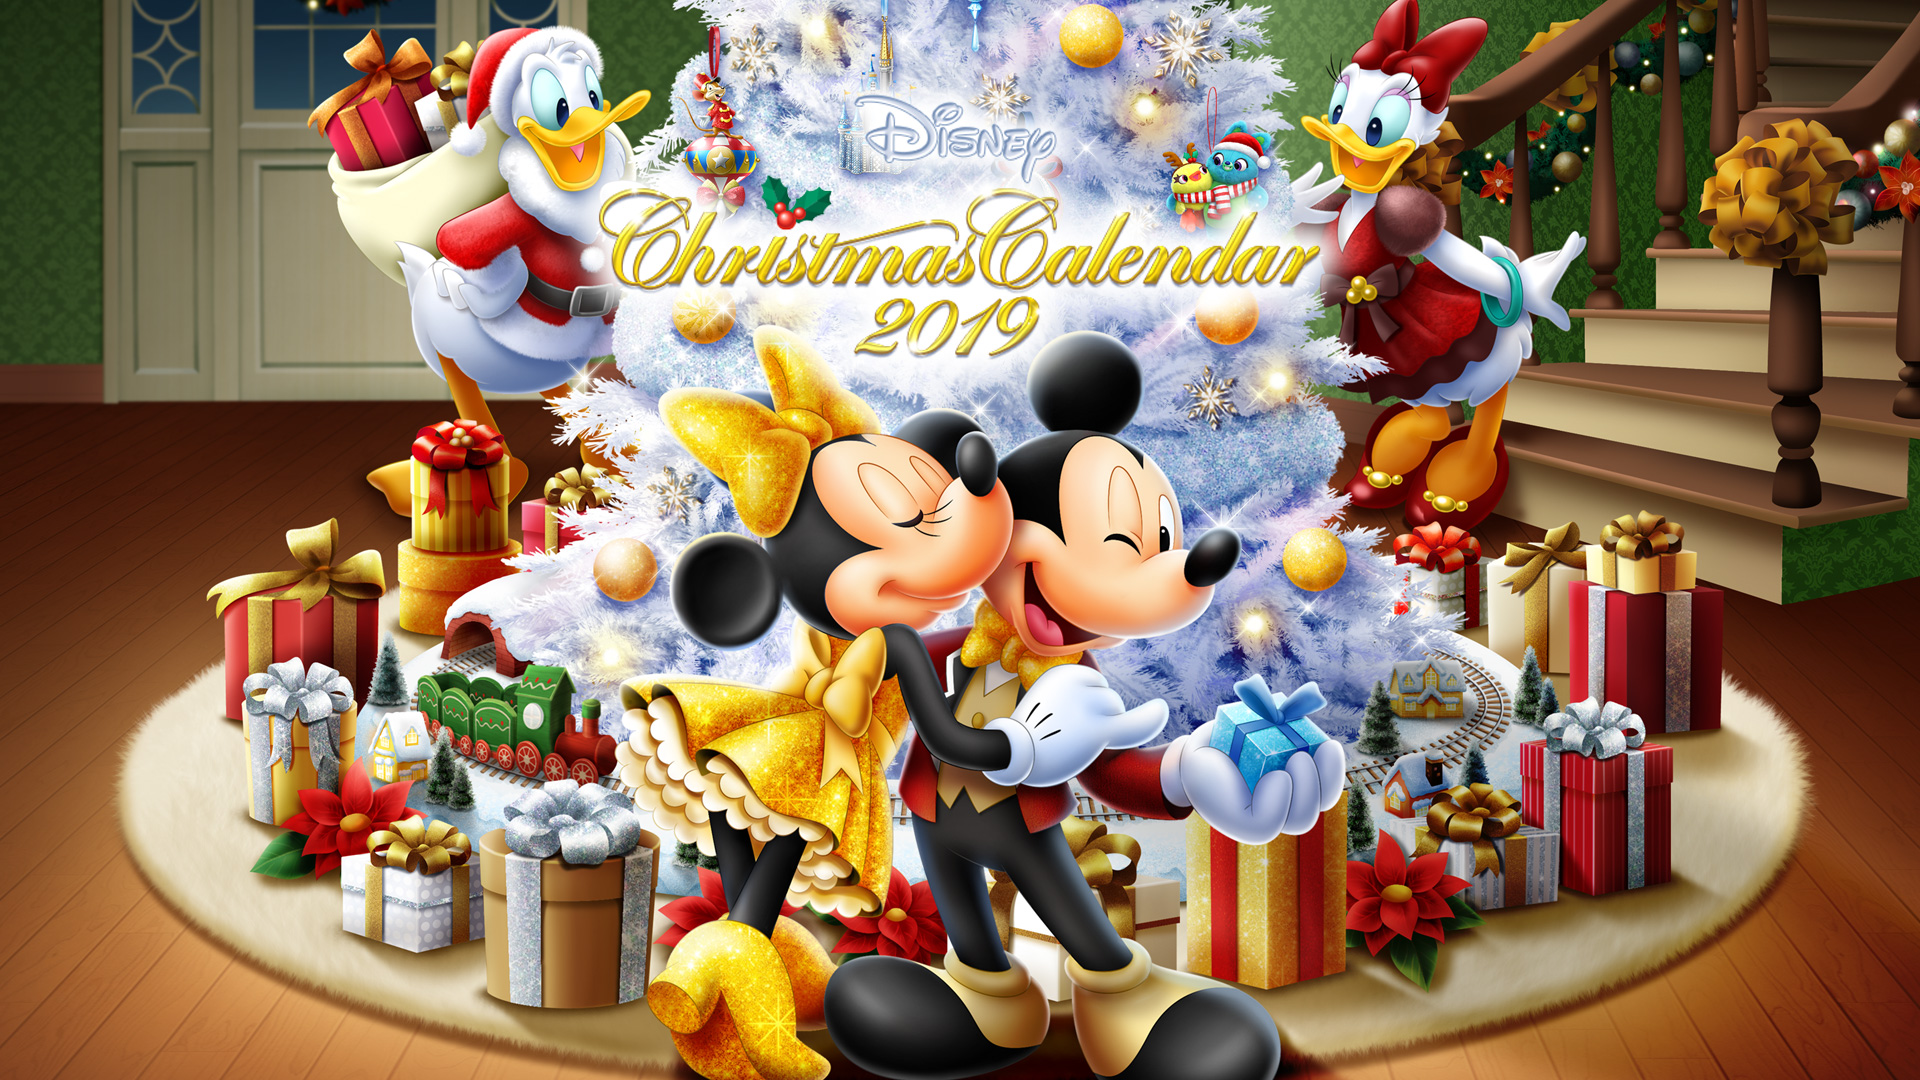 ミッキー、ミニーと一緒にオーナメントを集めて、クリスマスツリーに飾ろう!「ディズニーデラックス」が贈る、オンラインクリスマスイベント